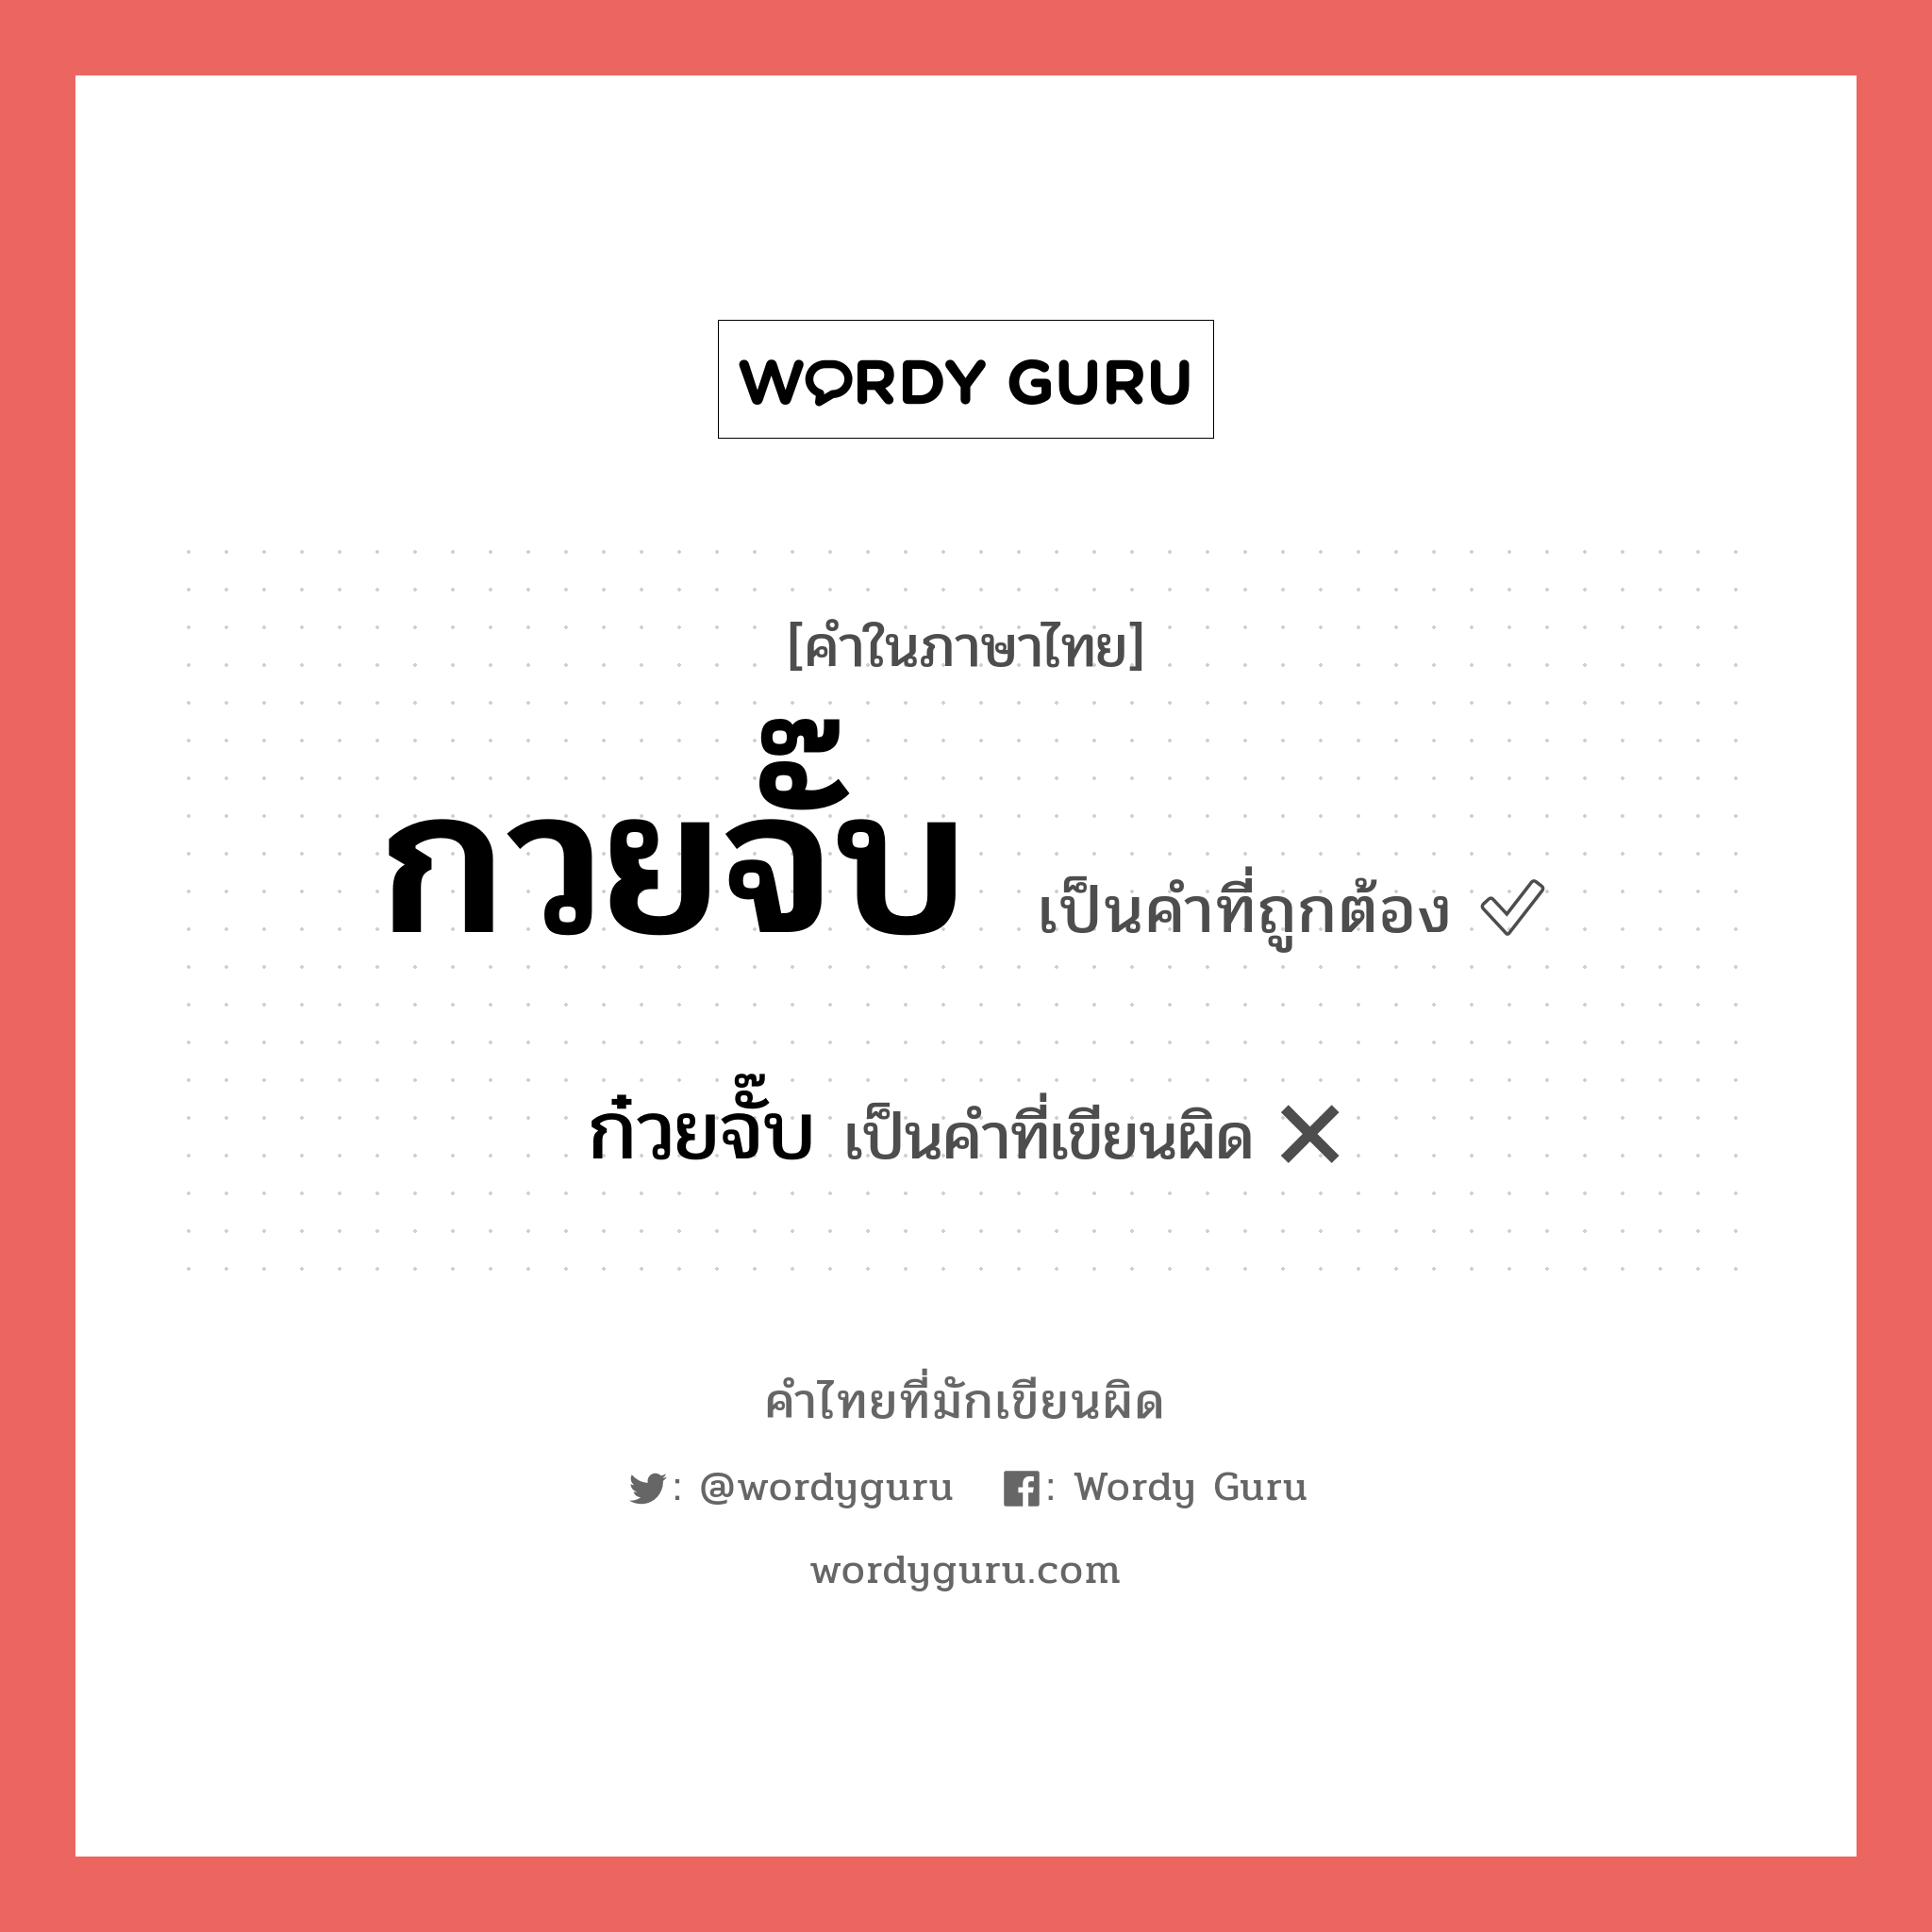 ก๋วยจั๊บ หรือ กวยจั๊บ คำไหนเขียนถูก?, คำในภาษาไทยที่มักเขียนผิด ก๋วยจั๊บ คำที่ผิด ❌ กวยจั๊บ